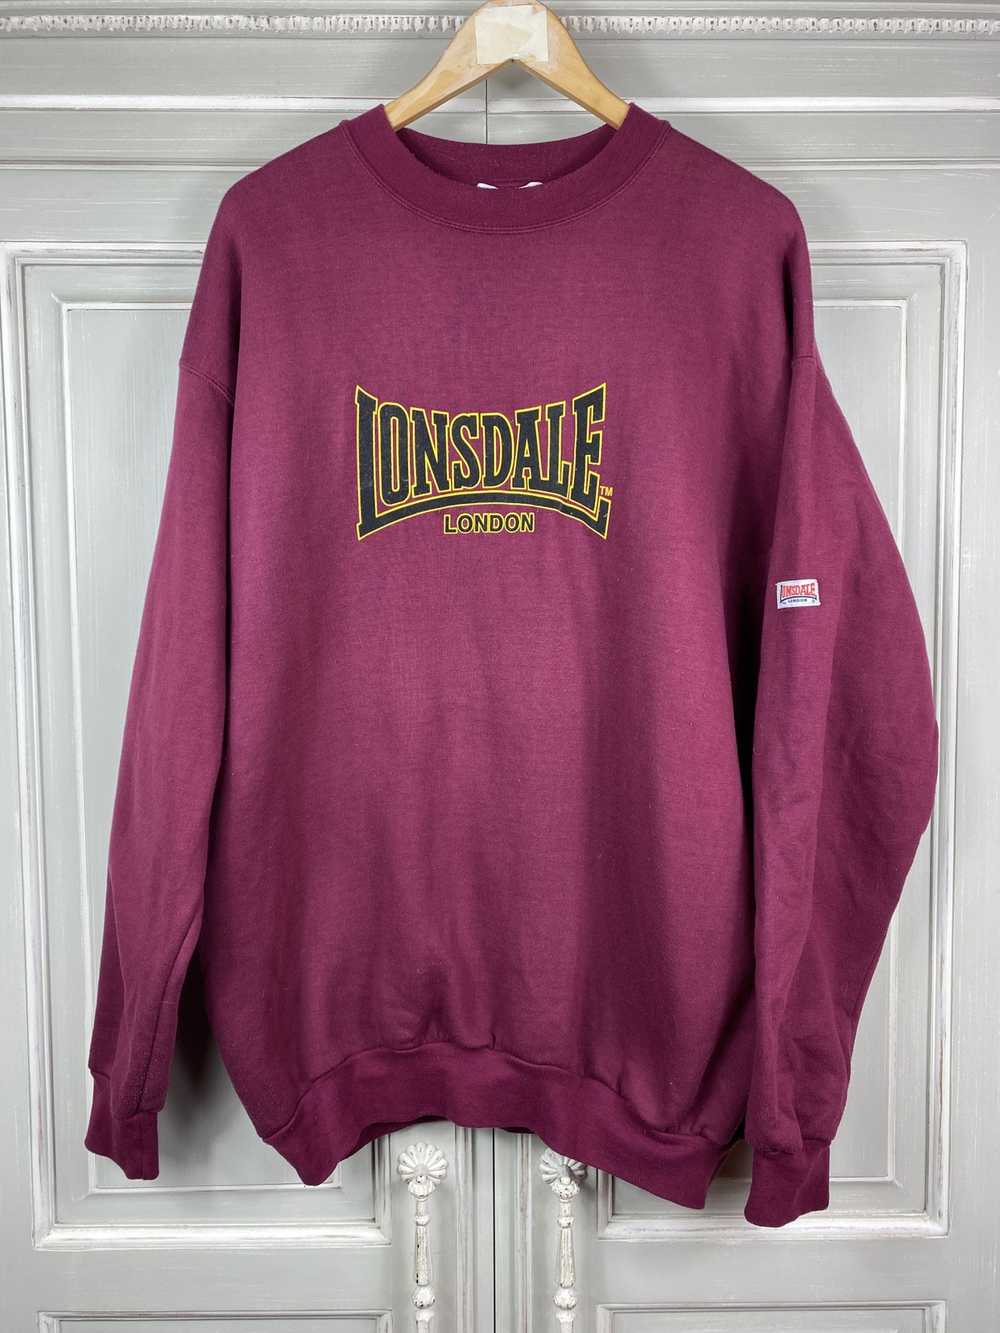 Lonsdale women tracksuit Lurgan - Ladies Sweatshirts - Lonsdale London